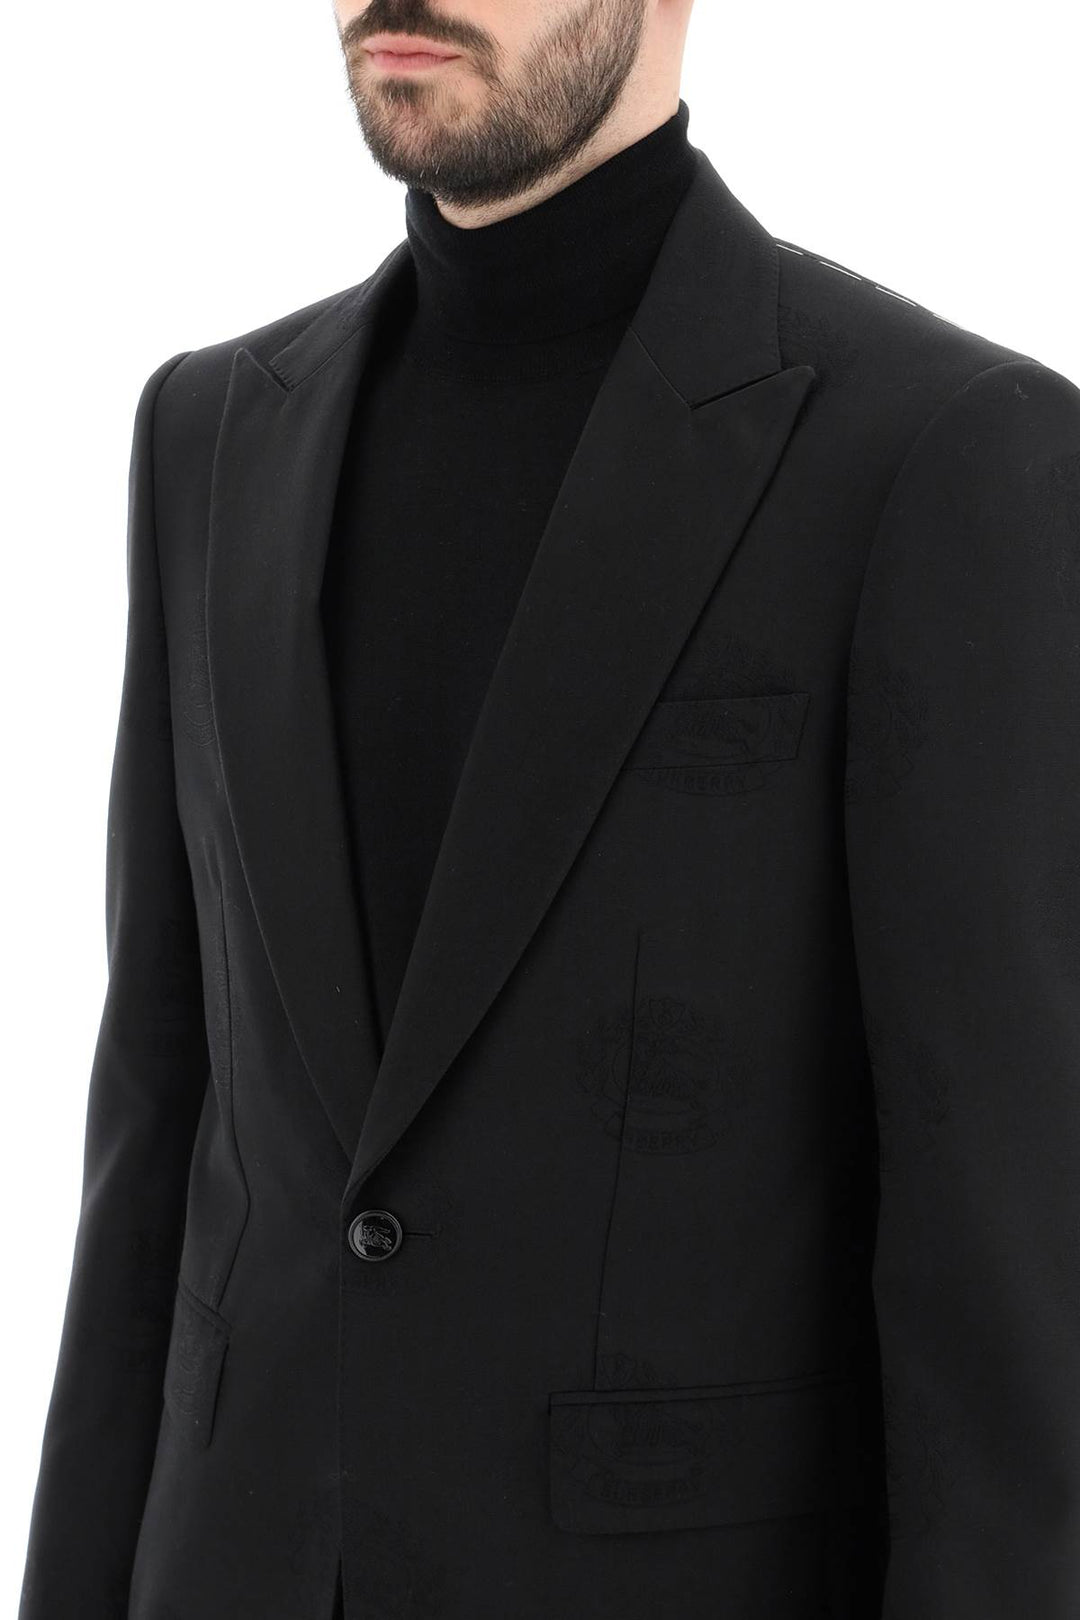 Burberry Tuxedo Jacket With Jacquard Details   Nero